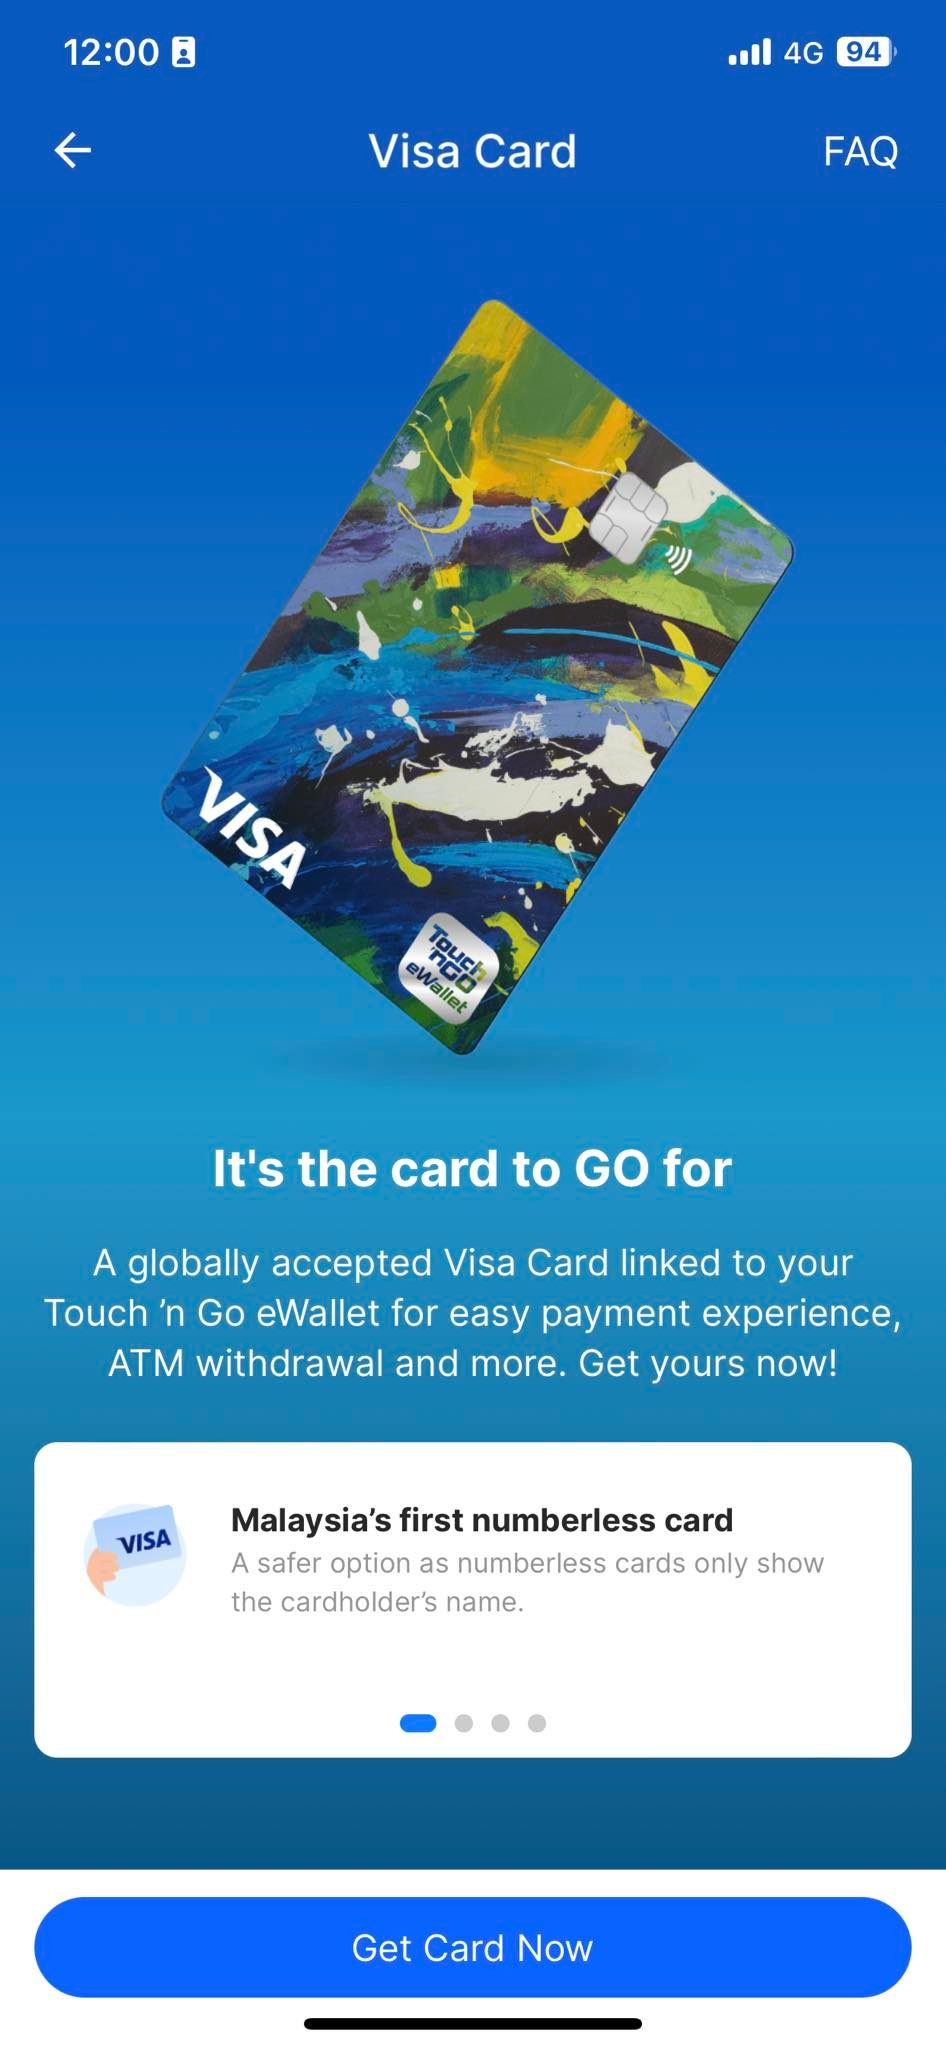 TnG eWallet Visa 卡